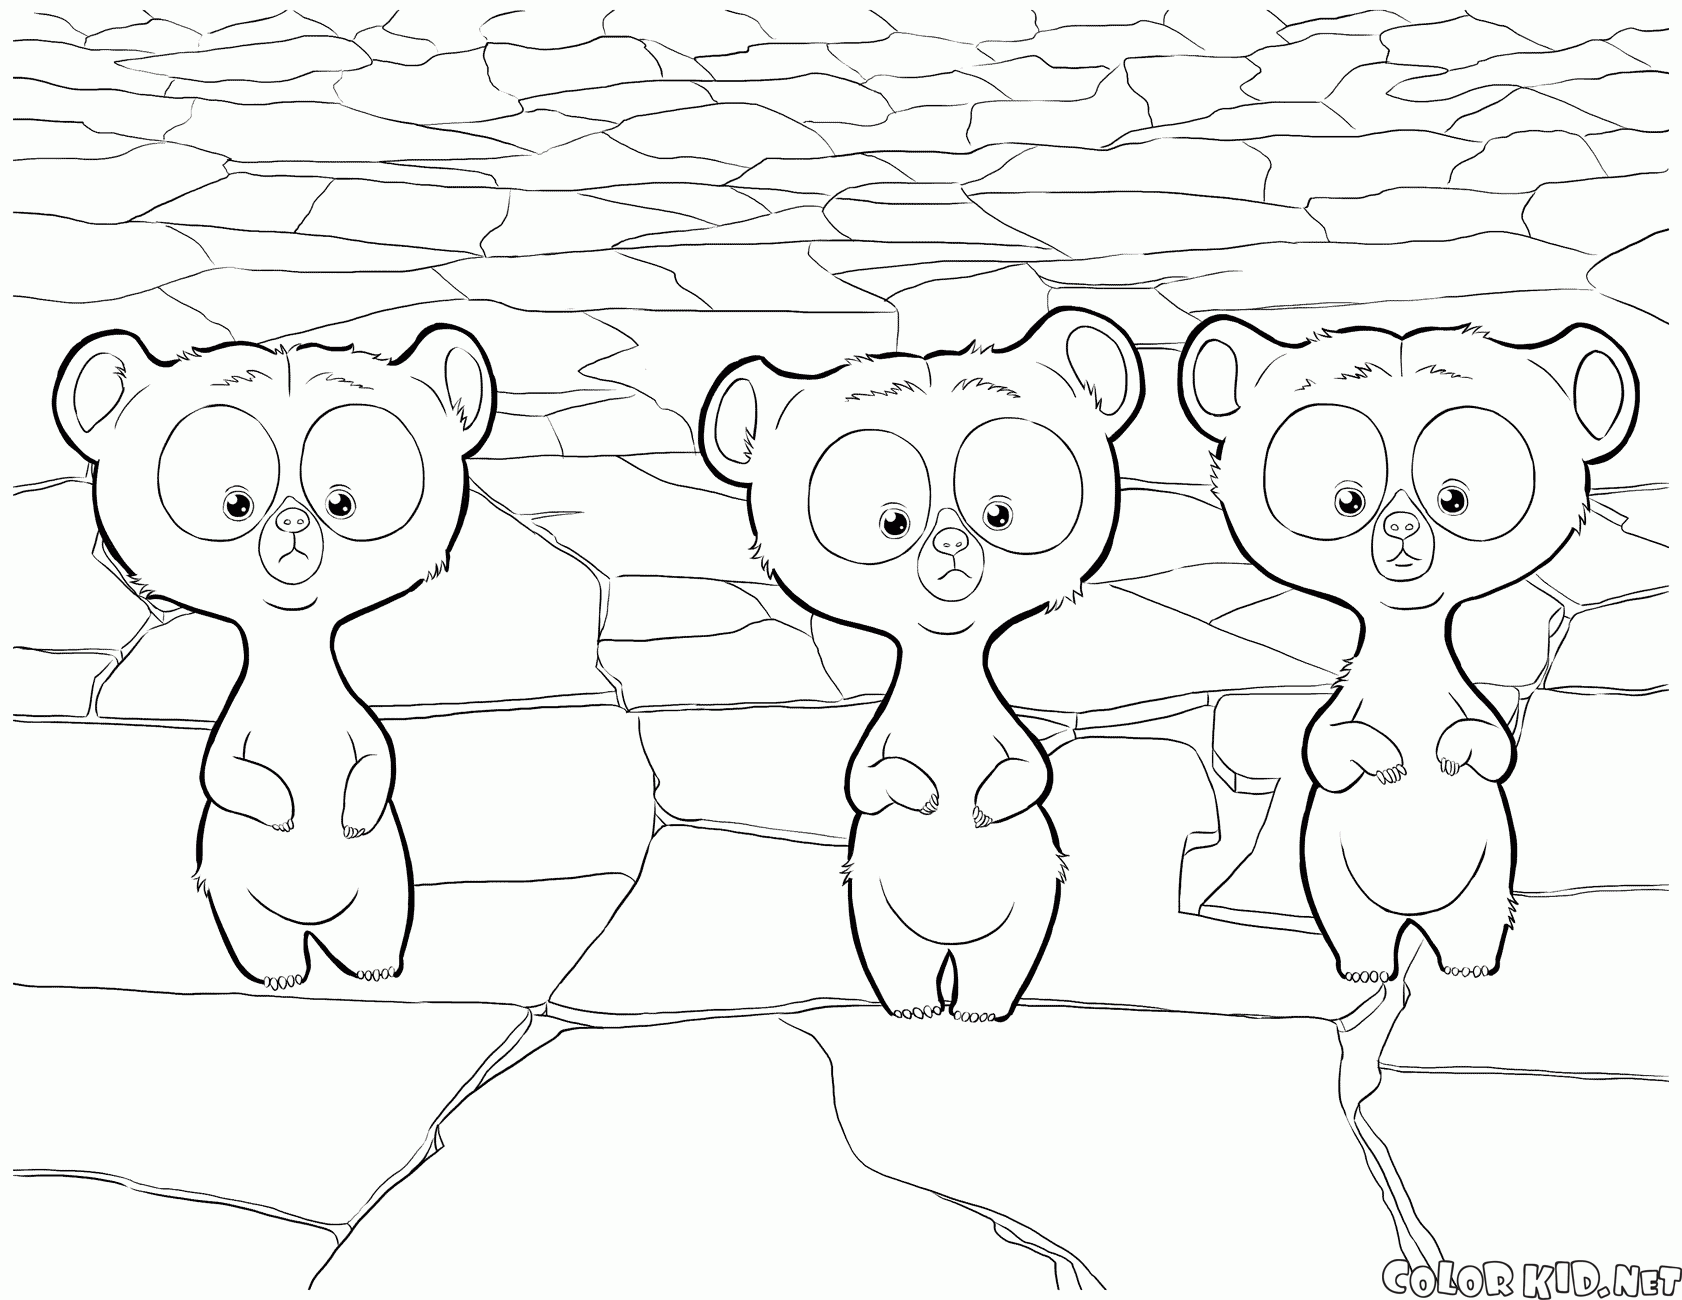 Os trigêmeos tornaram-se filhotes de urso